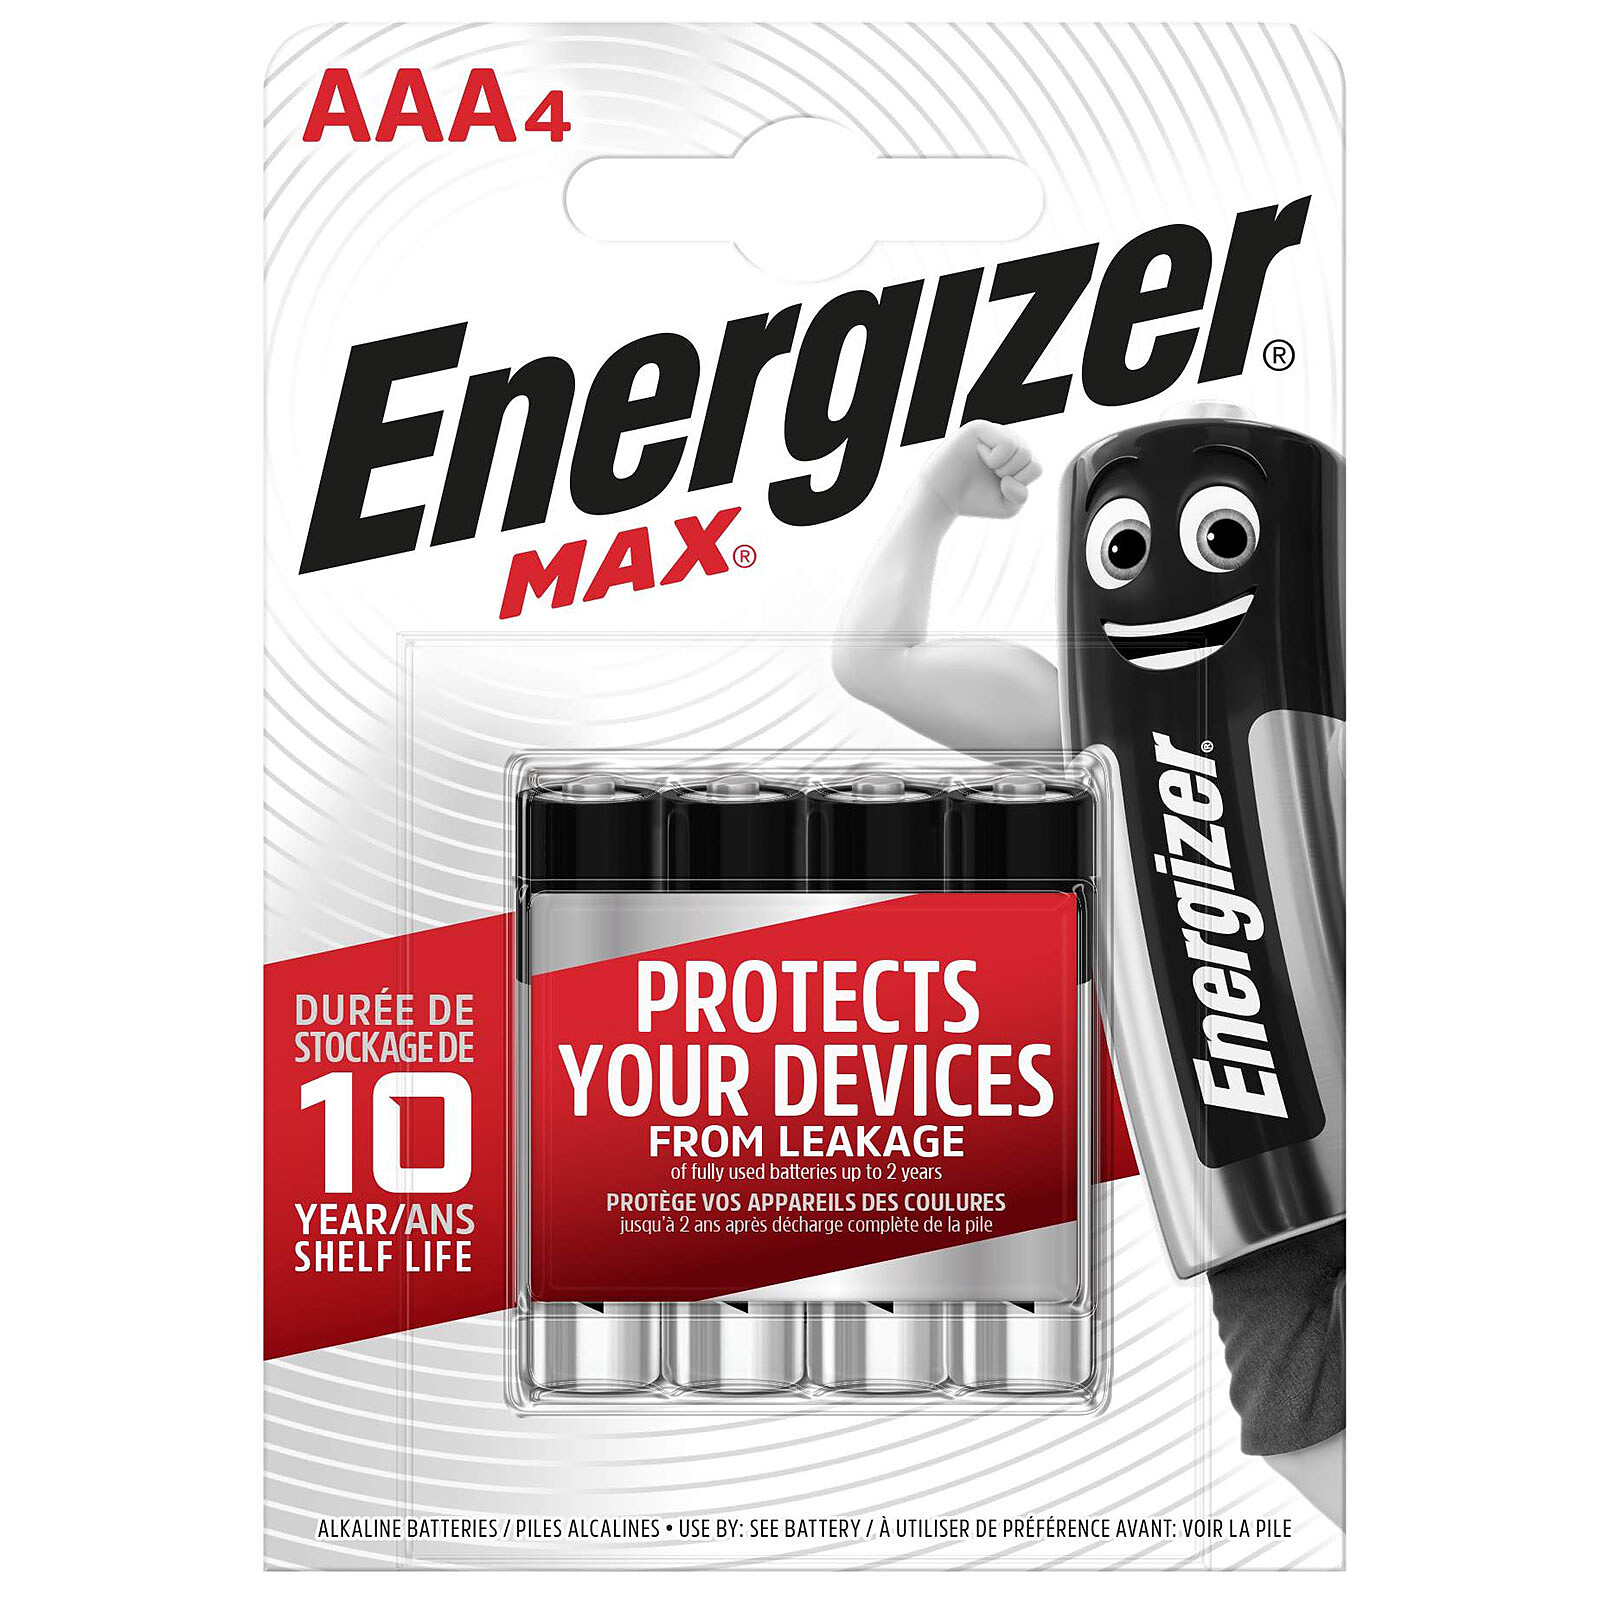 Energizer Max AAA (par 4) - Pile & chargeur - LDLC